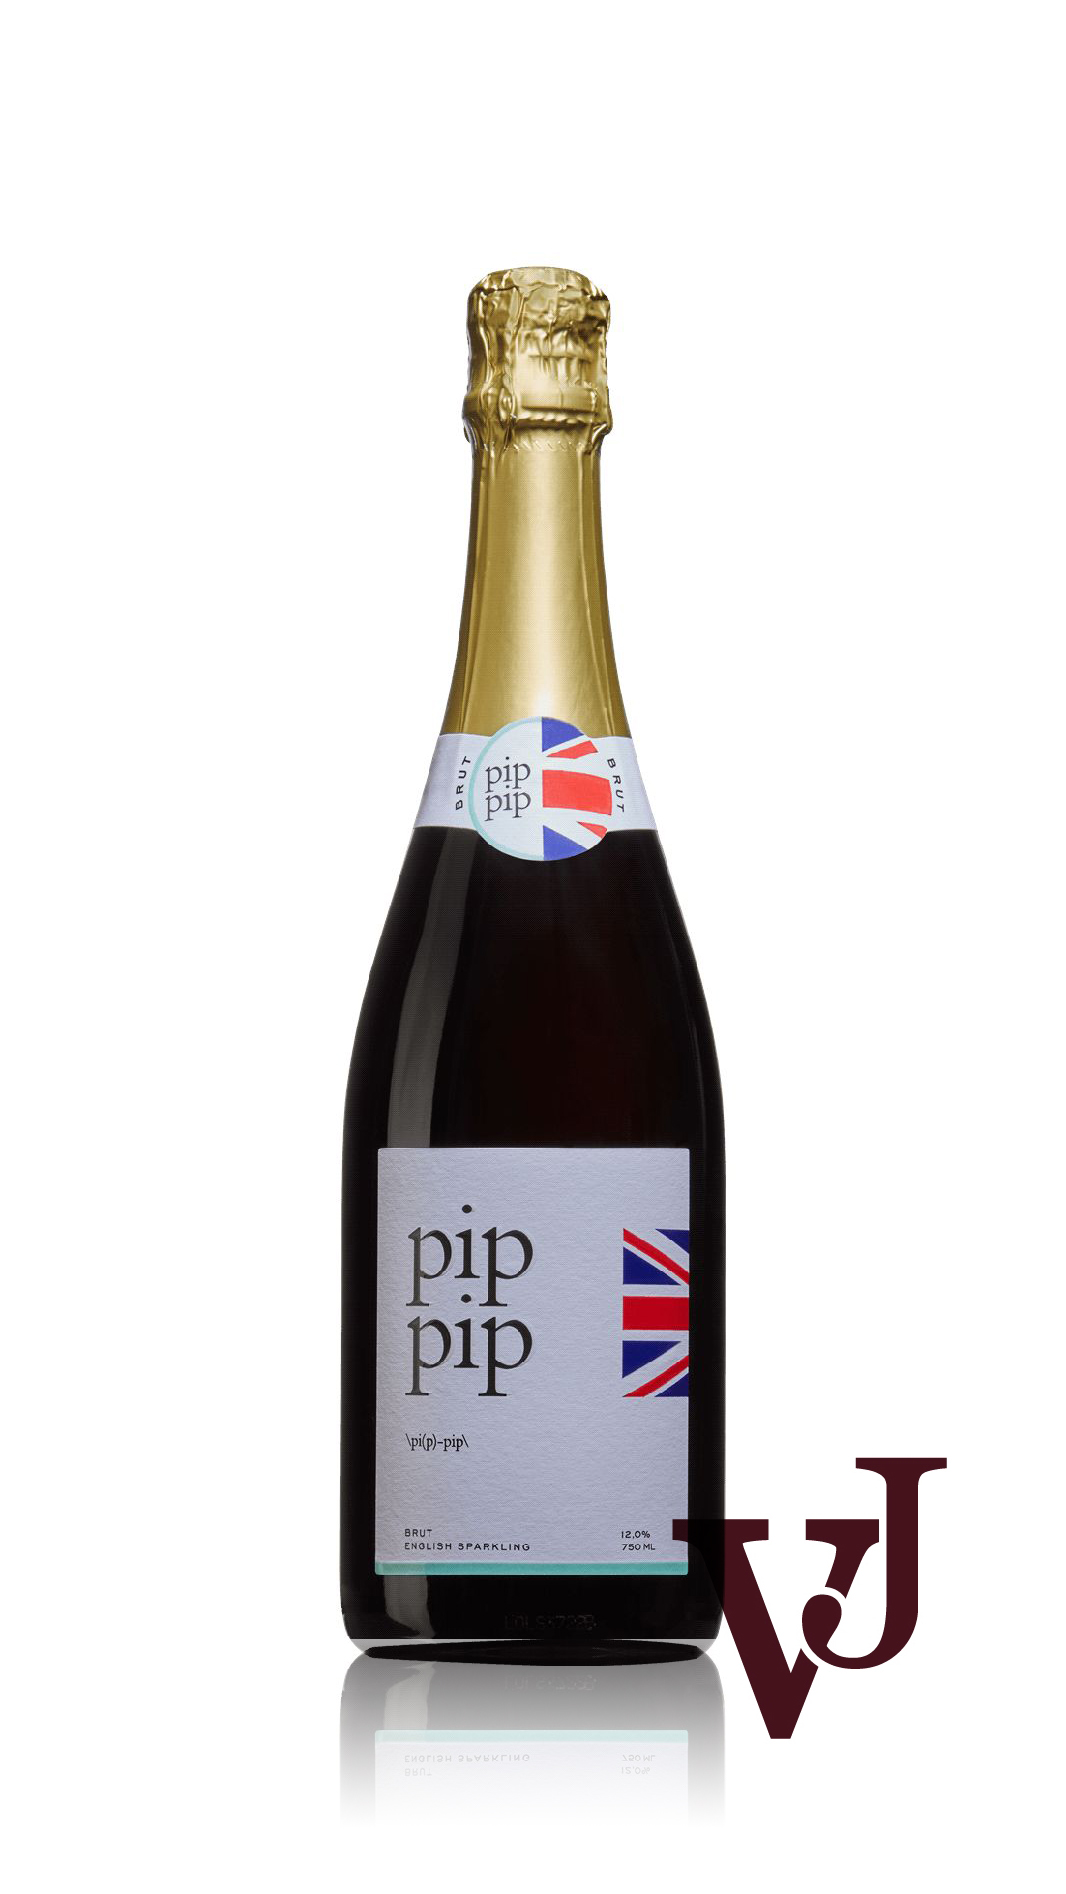 Mousserande Vin - pip-pip artikel nummer 9301801 från producenten Rolling Green Hills Limited från området Storbritannien